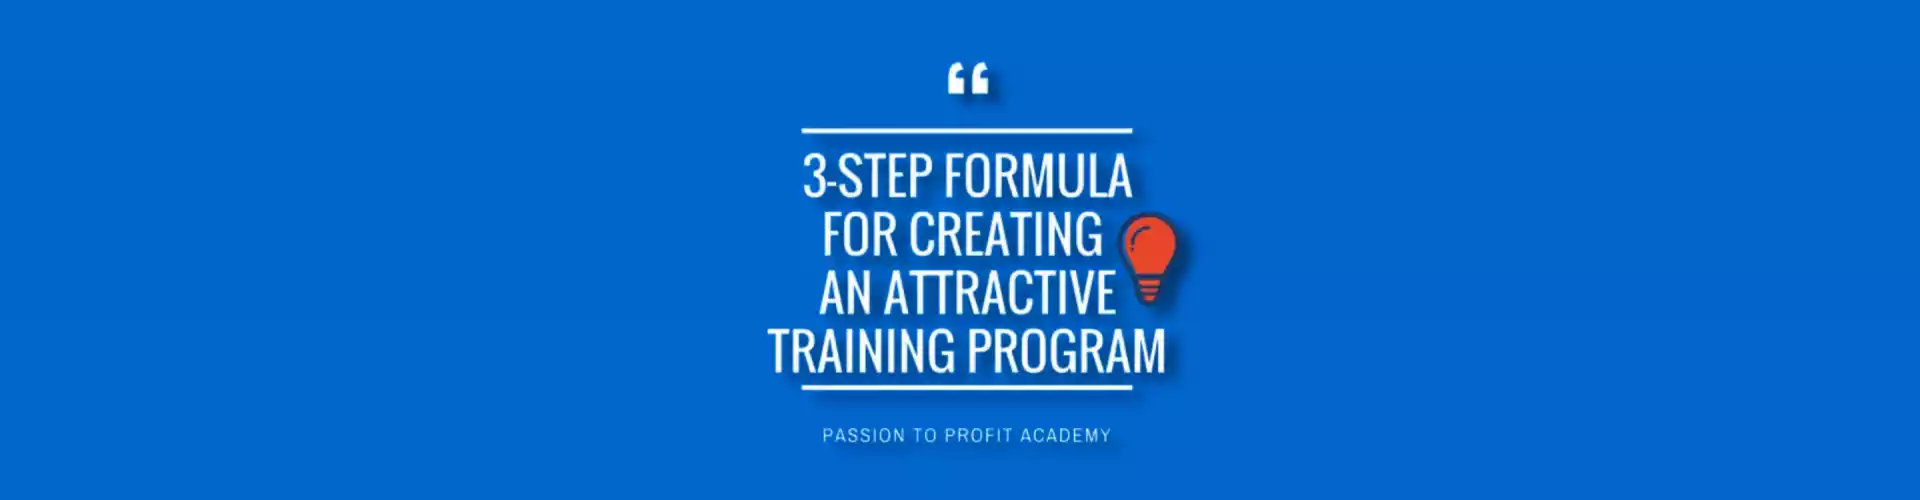 魅力的なトレーニング プログラムを作成するための 3 ステップの公式 - 多言語